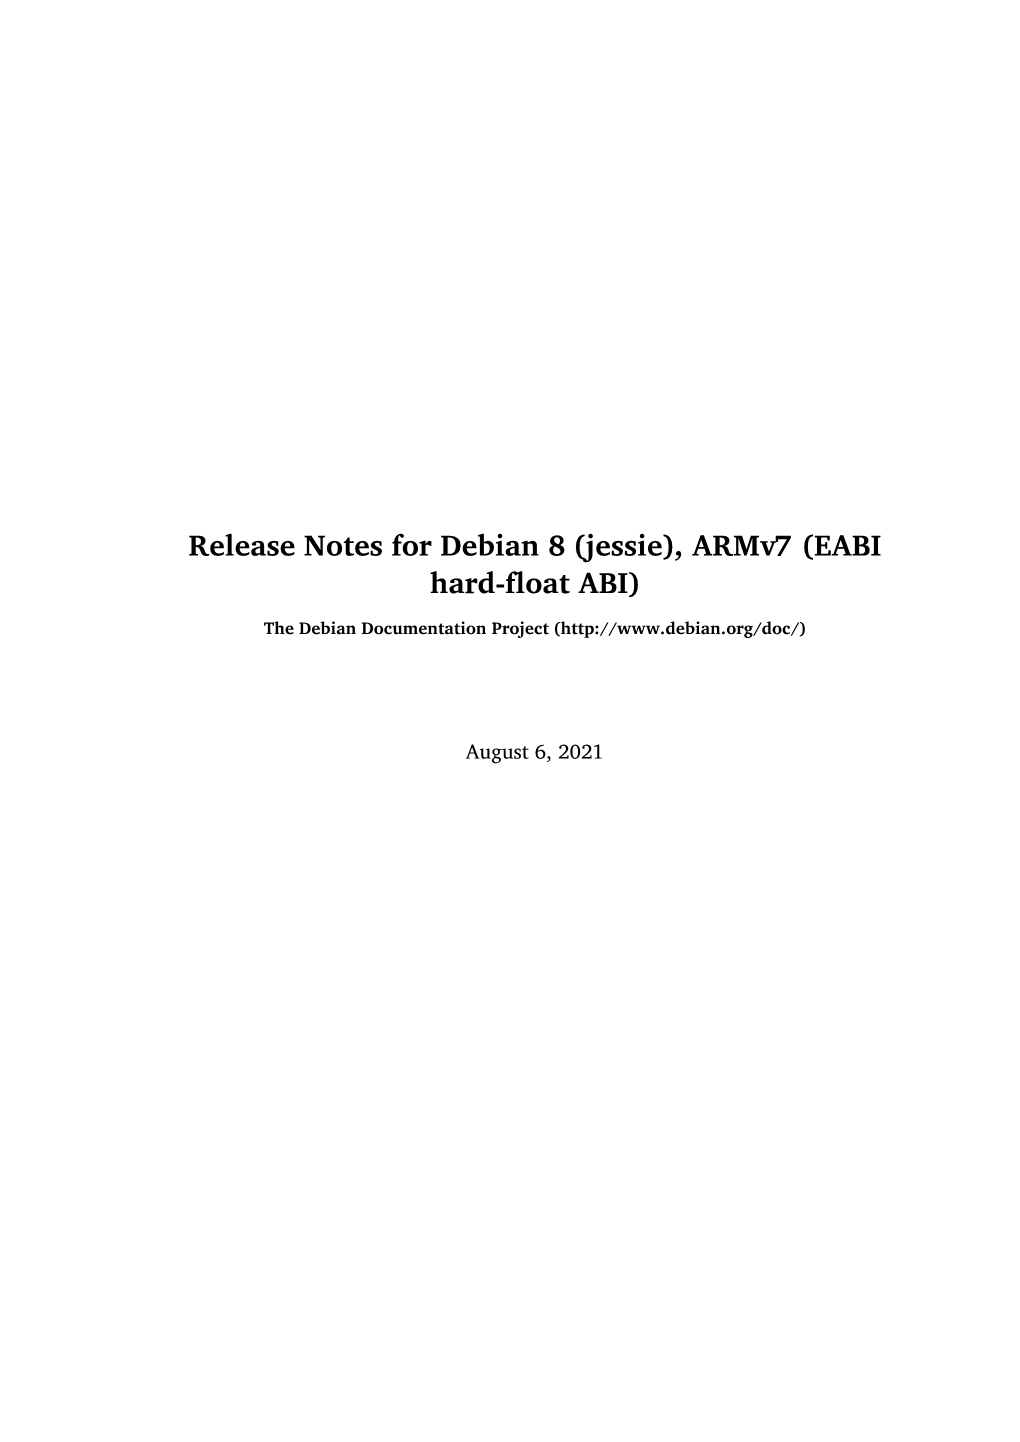 Release Notes for Debian 8 (Jessie), Armv7 (EABI Hard-Float ABI)